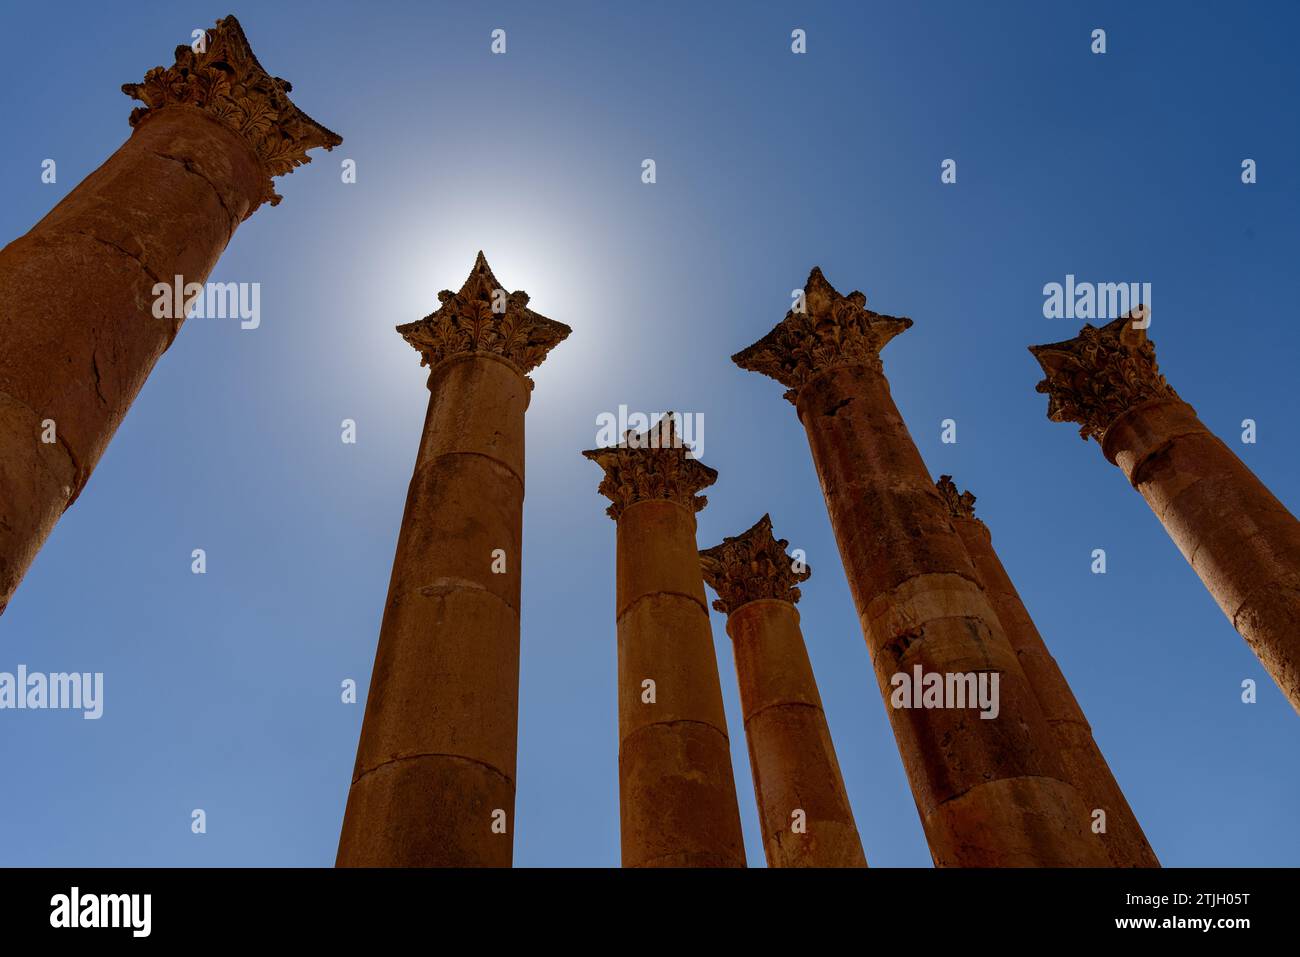 Columnas corintias que se elevan sobre un cielo azul. Templo de Artemisa, Jerash, Jordania. Foto de stock